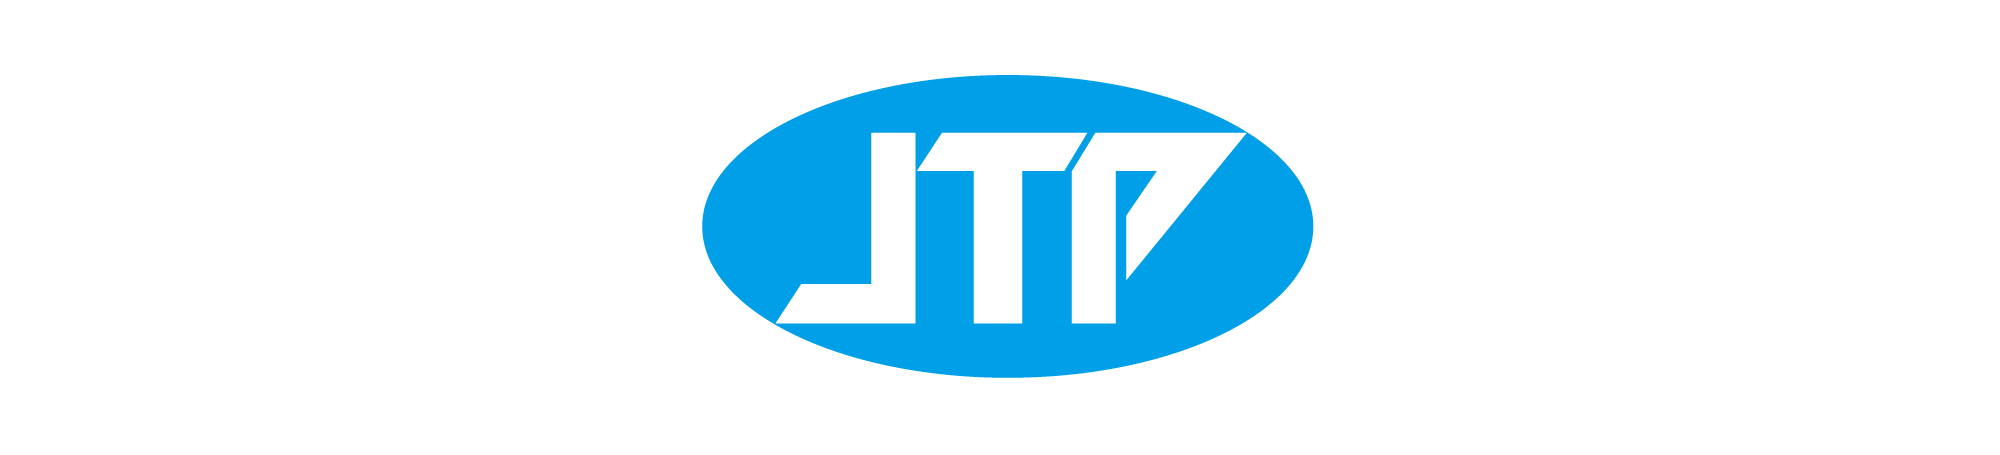 aboutus-jtp-logo